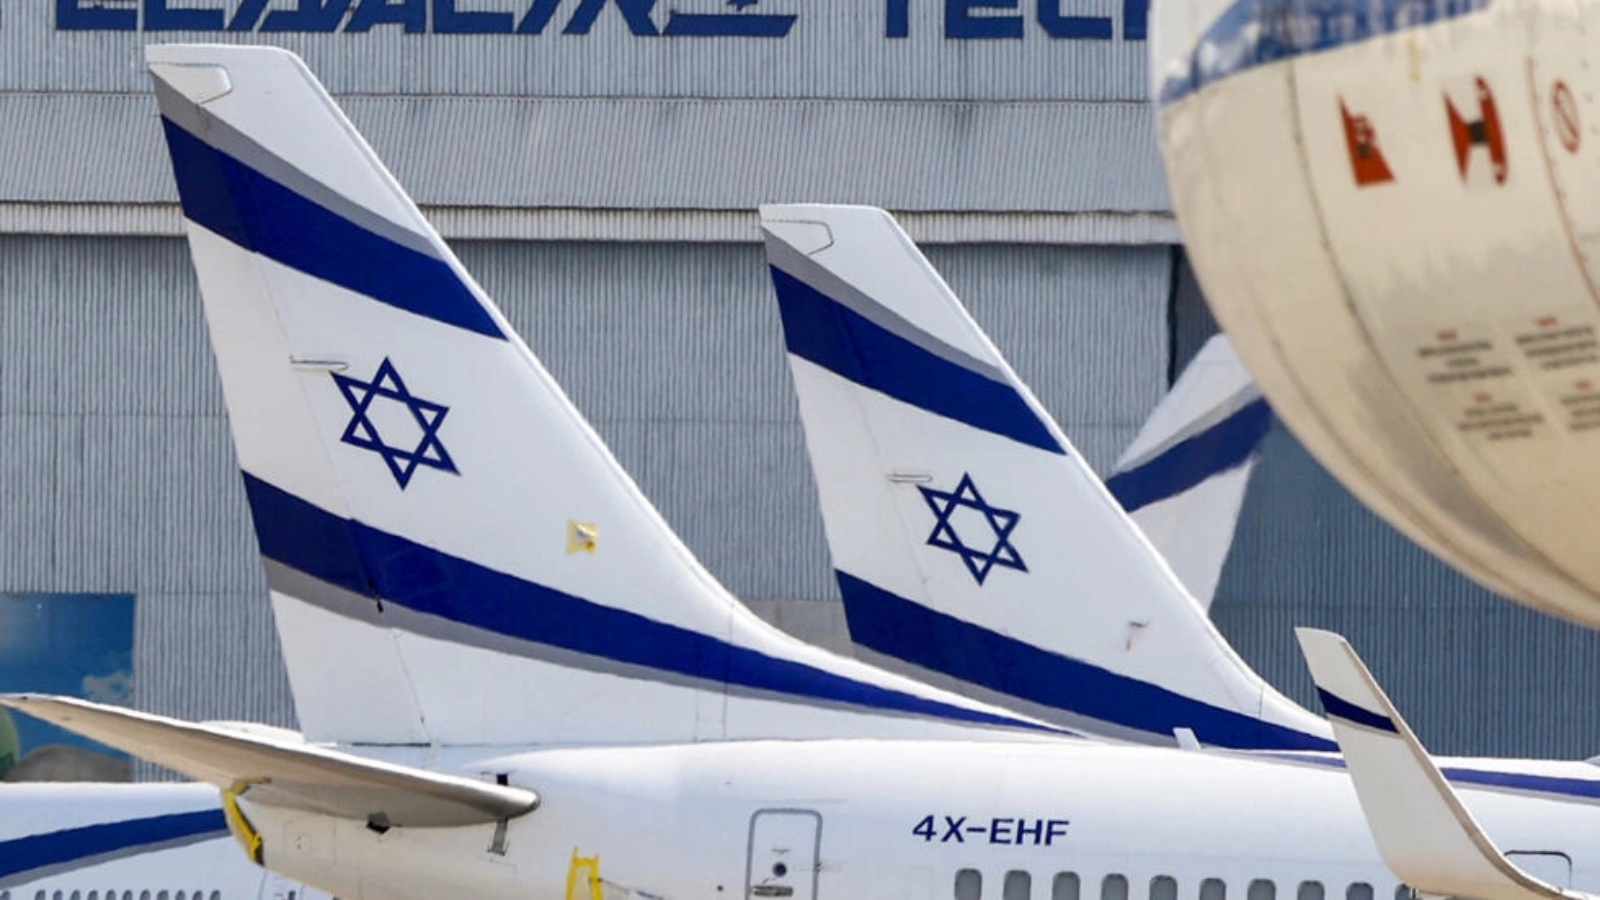 طائرة بوينغ 737 تابعة لشركة إل عال الإسرائيلية على مدرج مطار بن غوريون الإسرائيلي في اللد، شرق تل أبيب